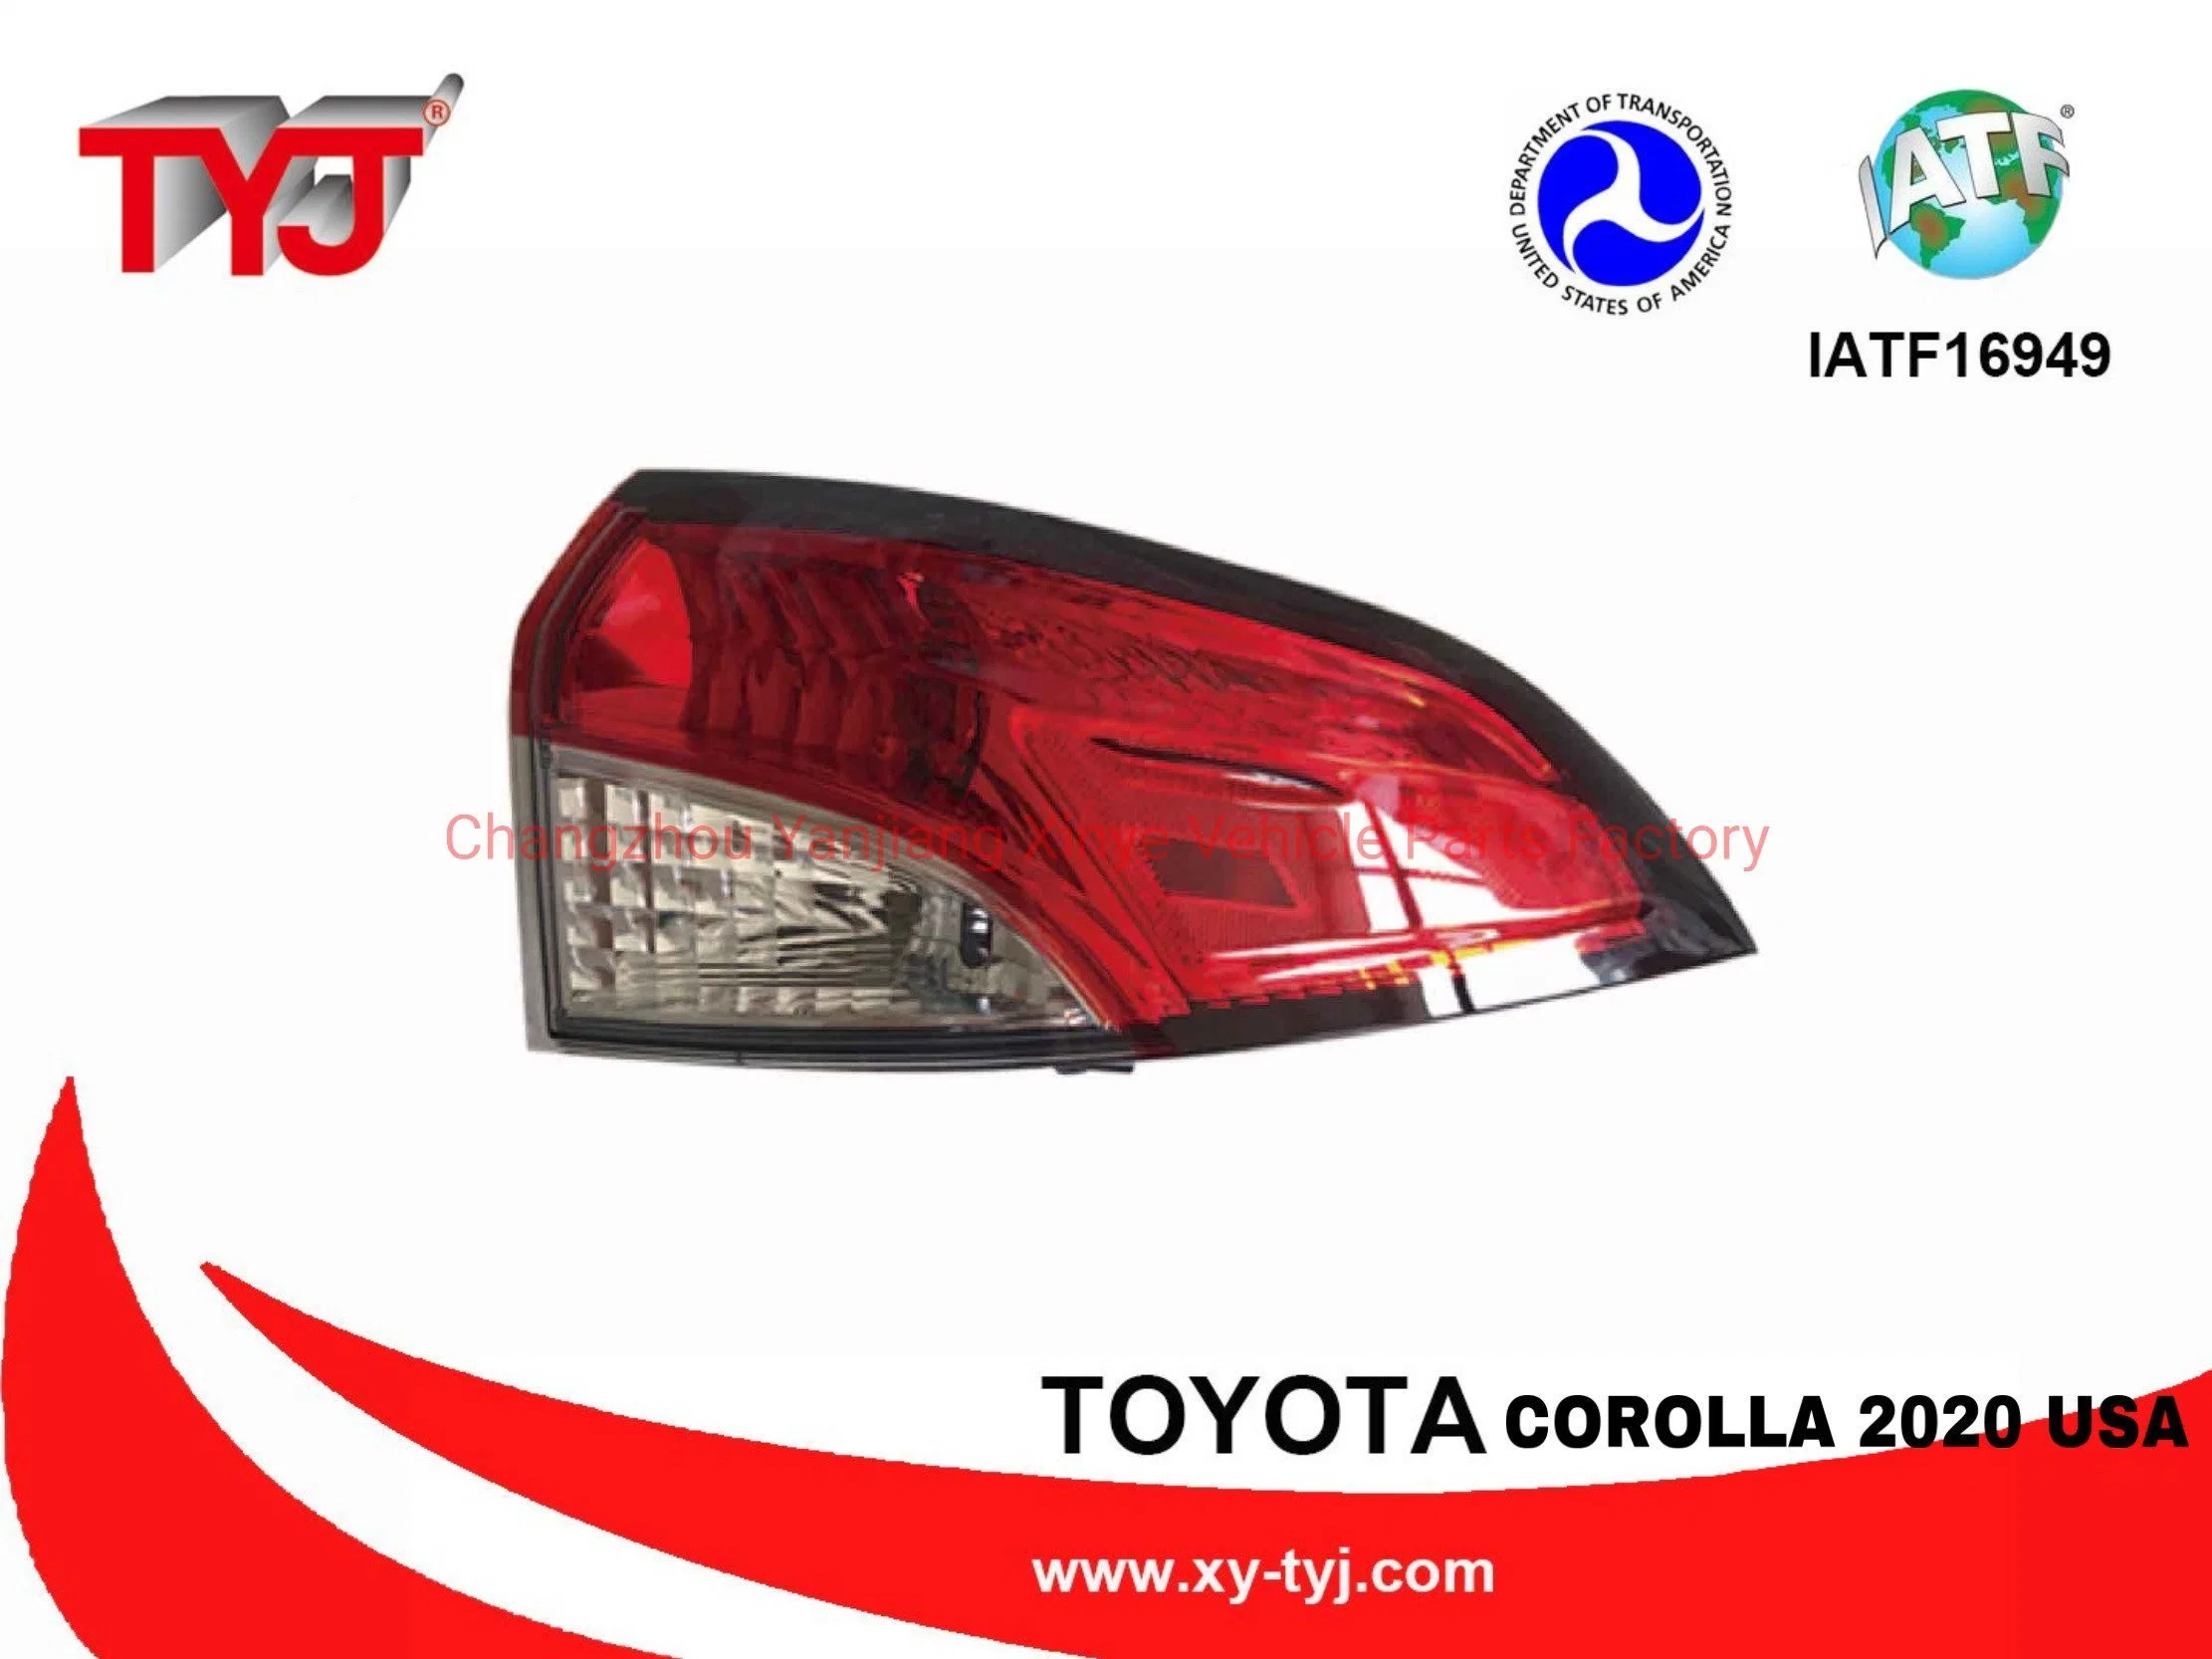 Gros phare LED pour pièces de carrosserie automobile, accessoires automobiles, phare LED pour voiture, feu arrière extérieur pour Corolla 2020 USA Se/Xse